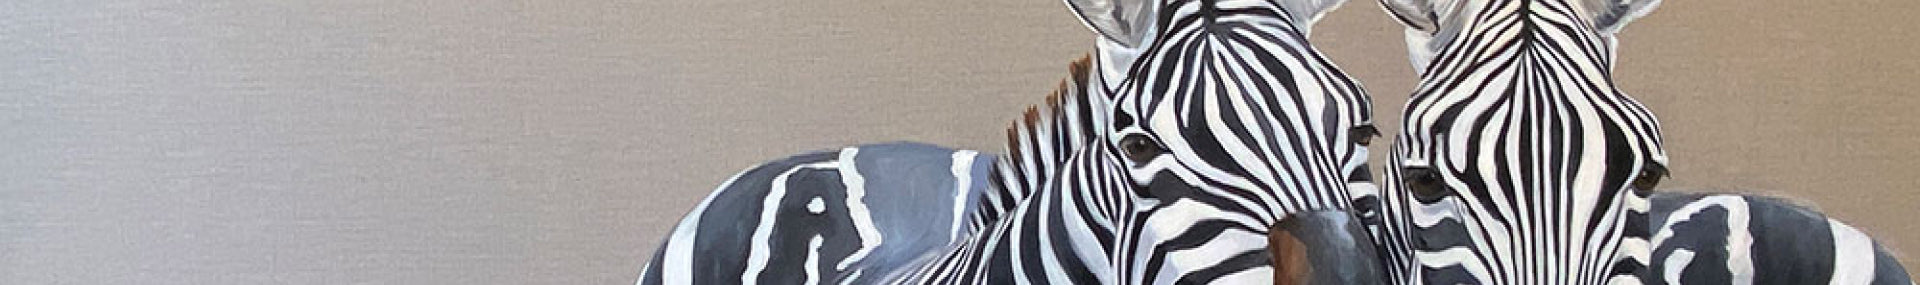 Original Zebra Paintings